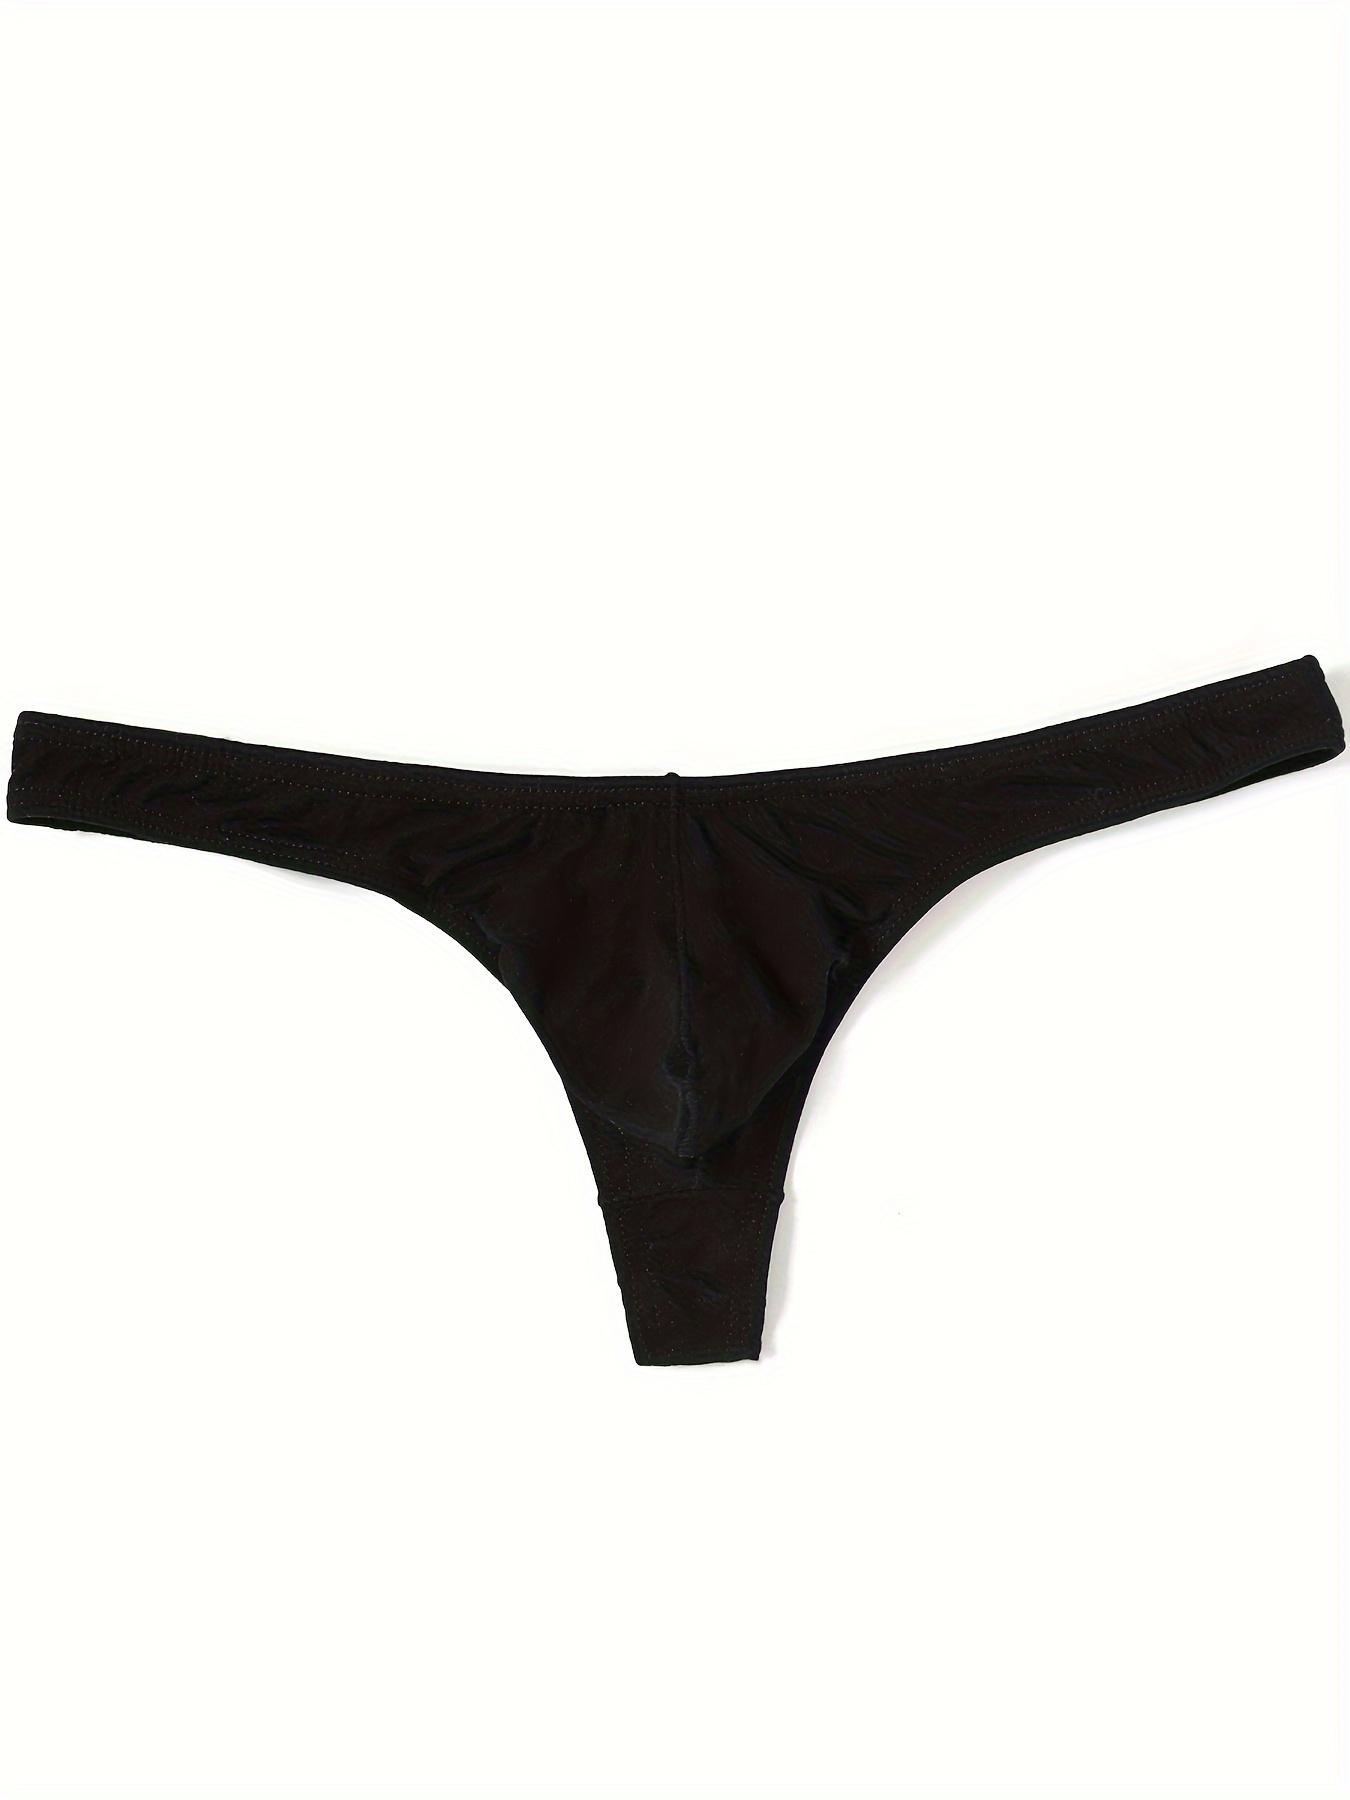 Comfortable Briefs Lace Large Size Men Thong Underwear 1pcs